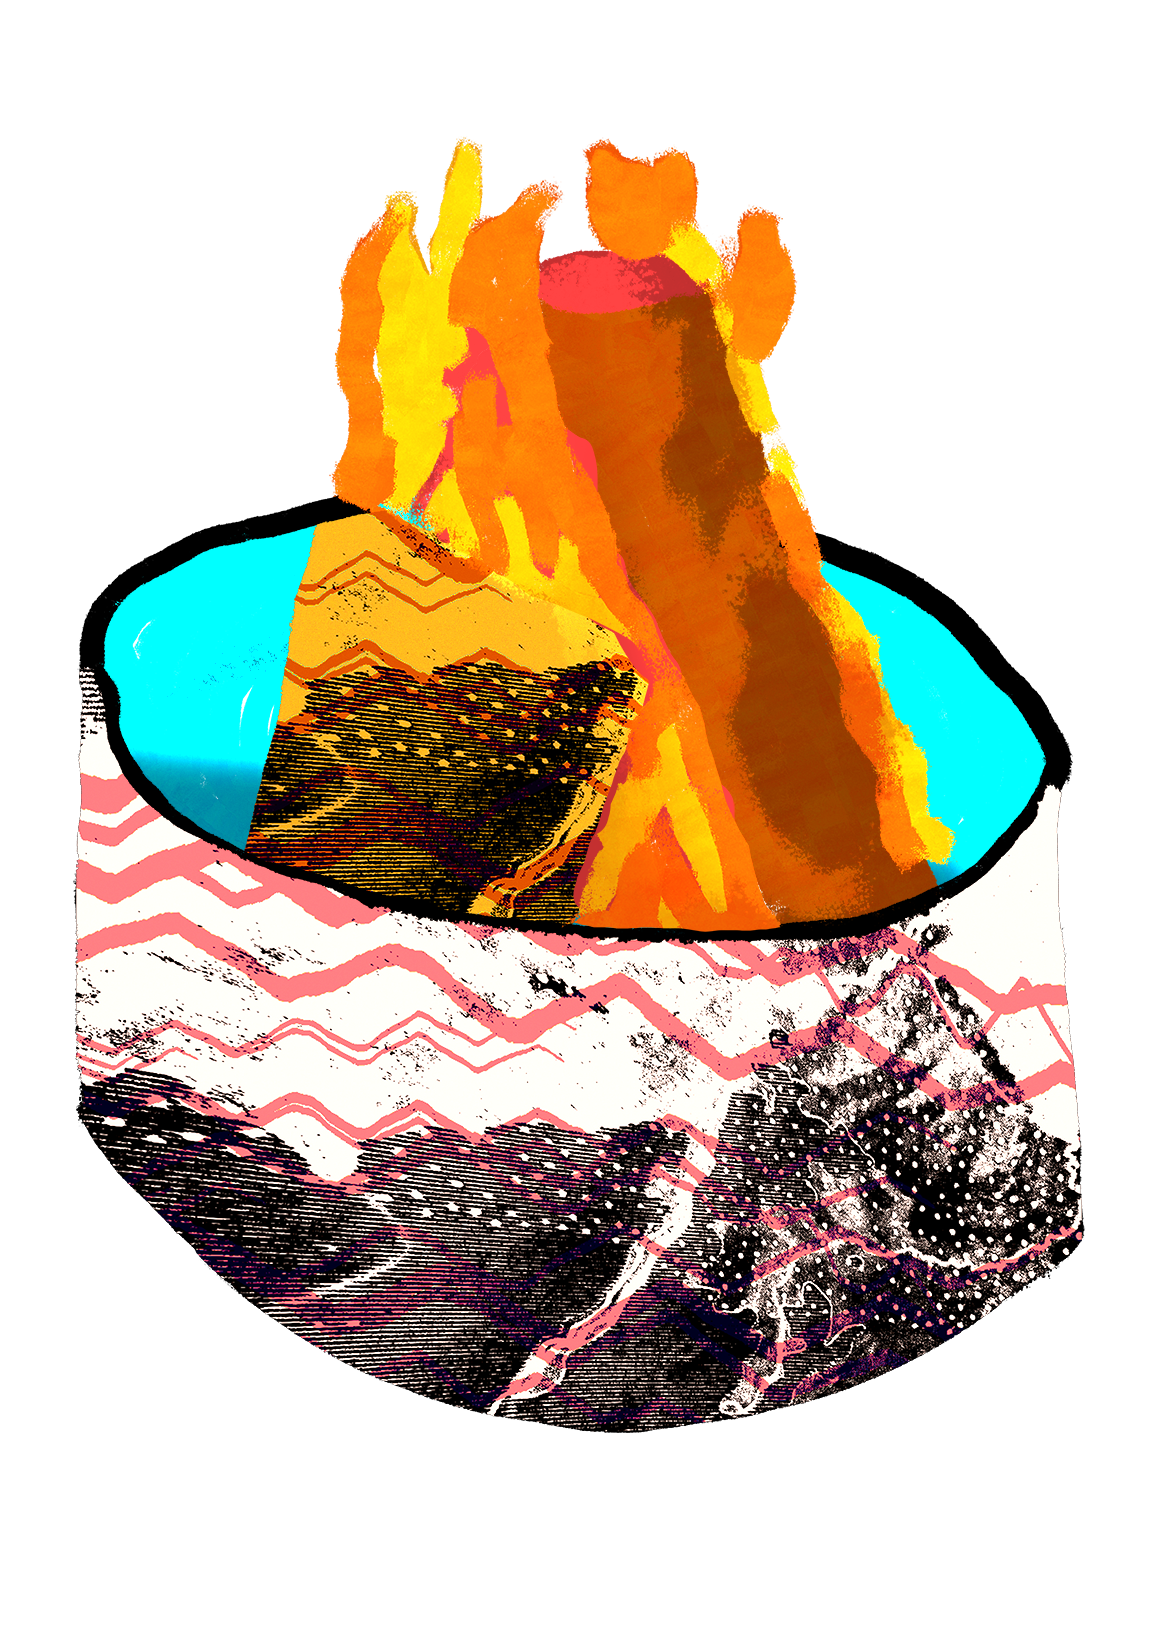 Heartandlava Fireplace 3